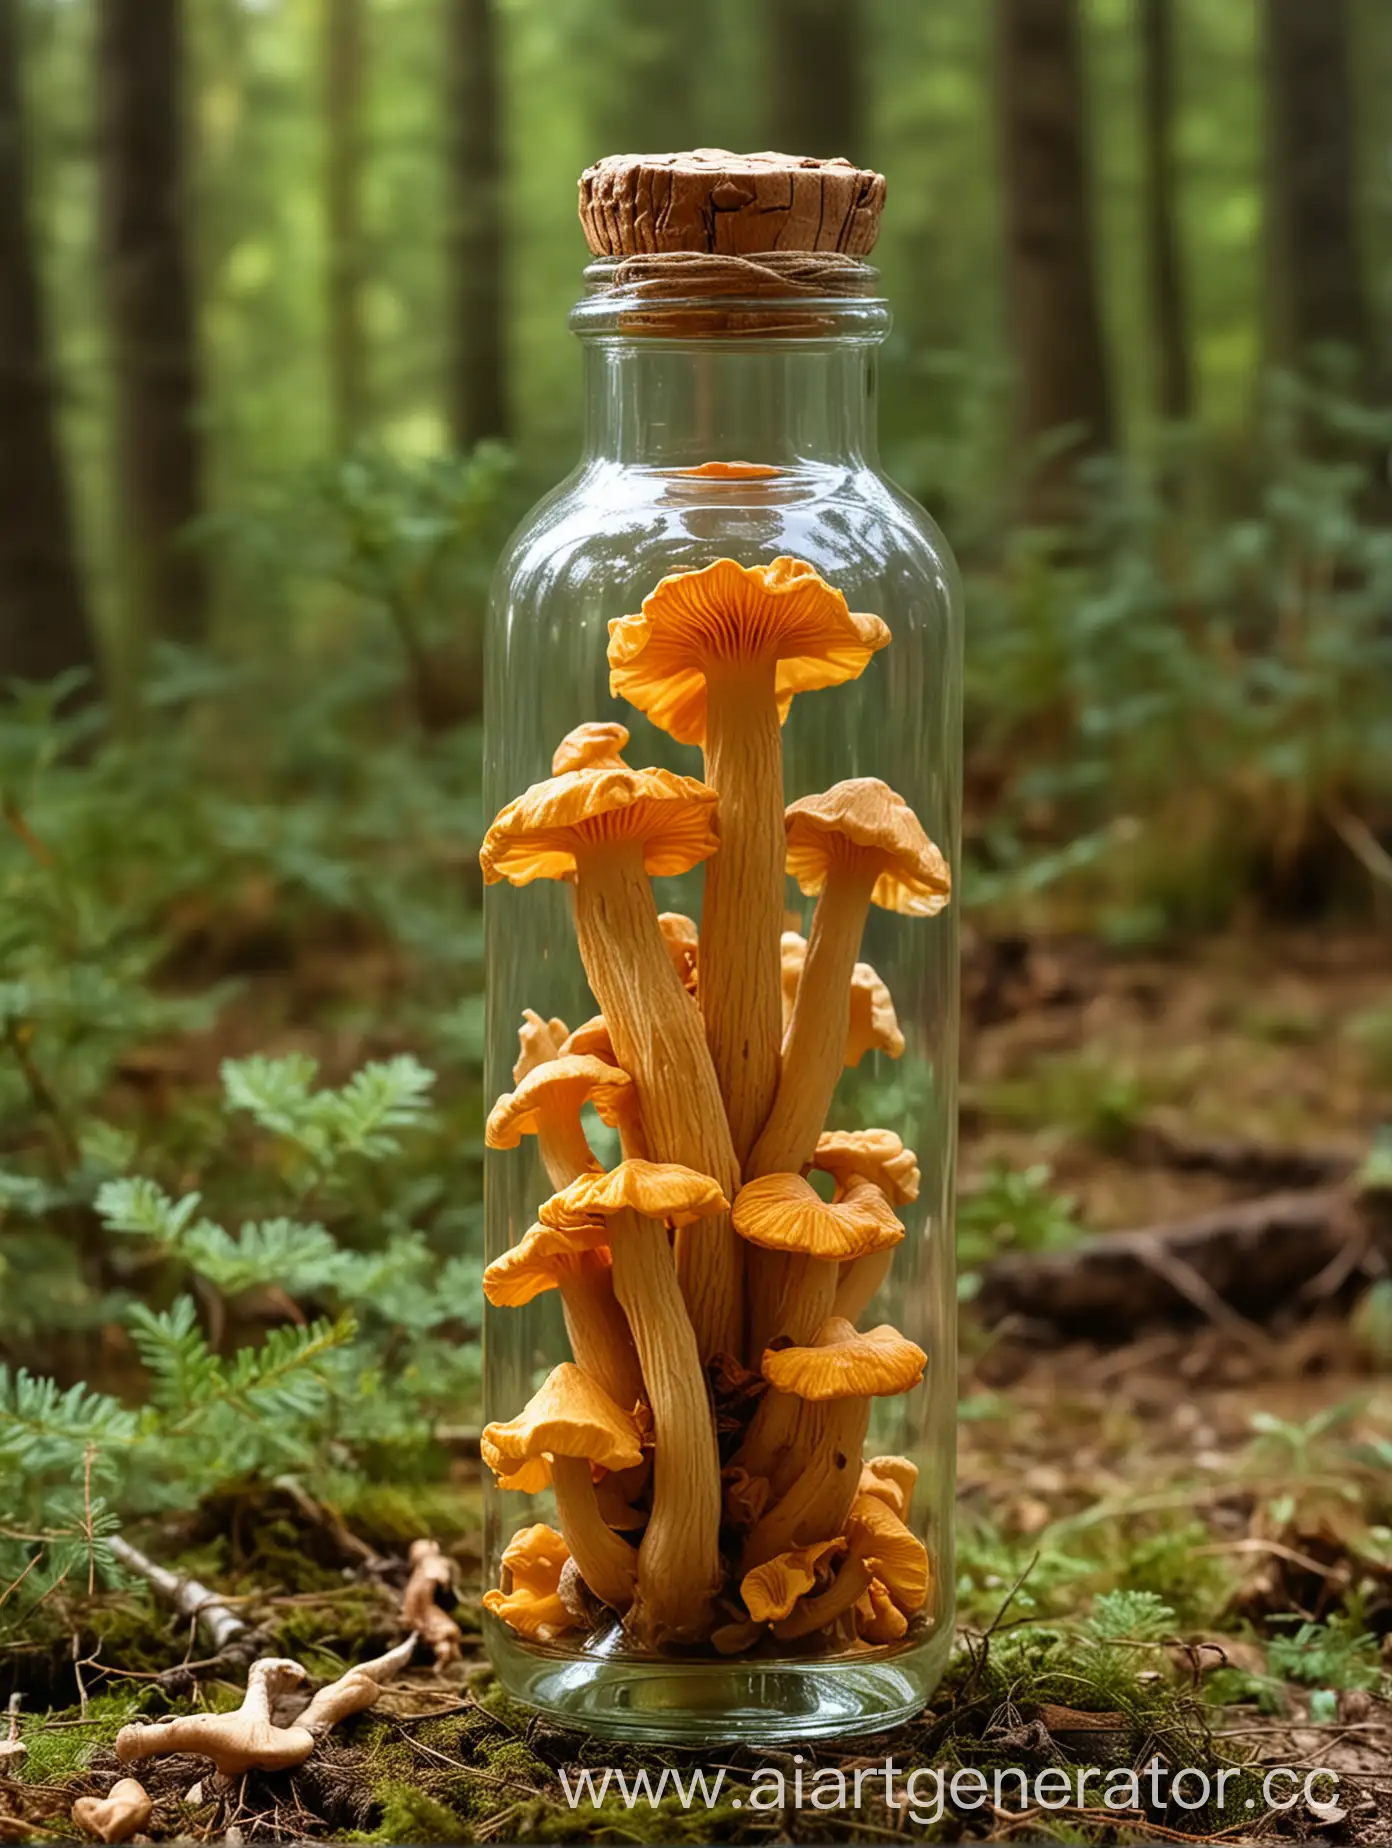 Chanterelle-Mushroom-Captured-in-Glass-Bottle-Amidst-Natural-Landscape